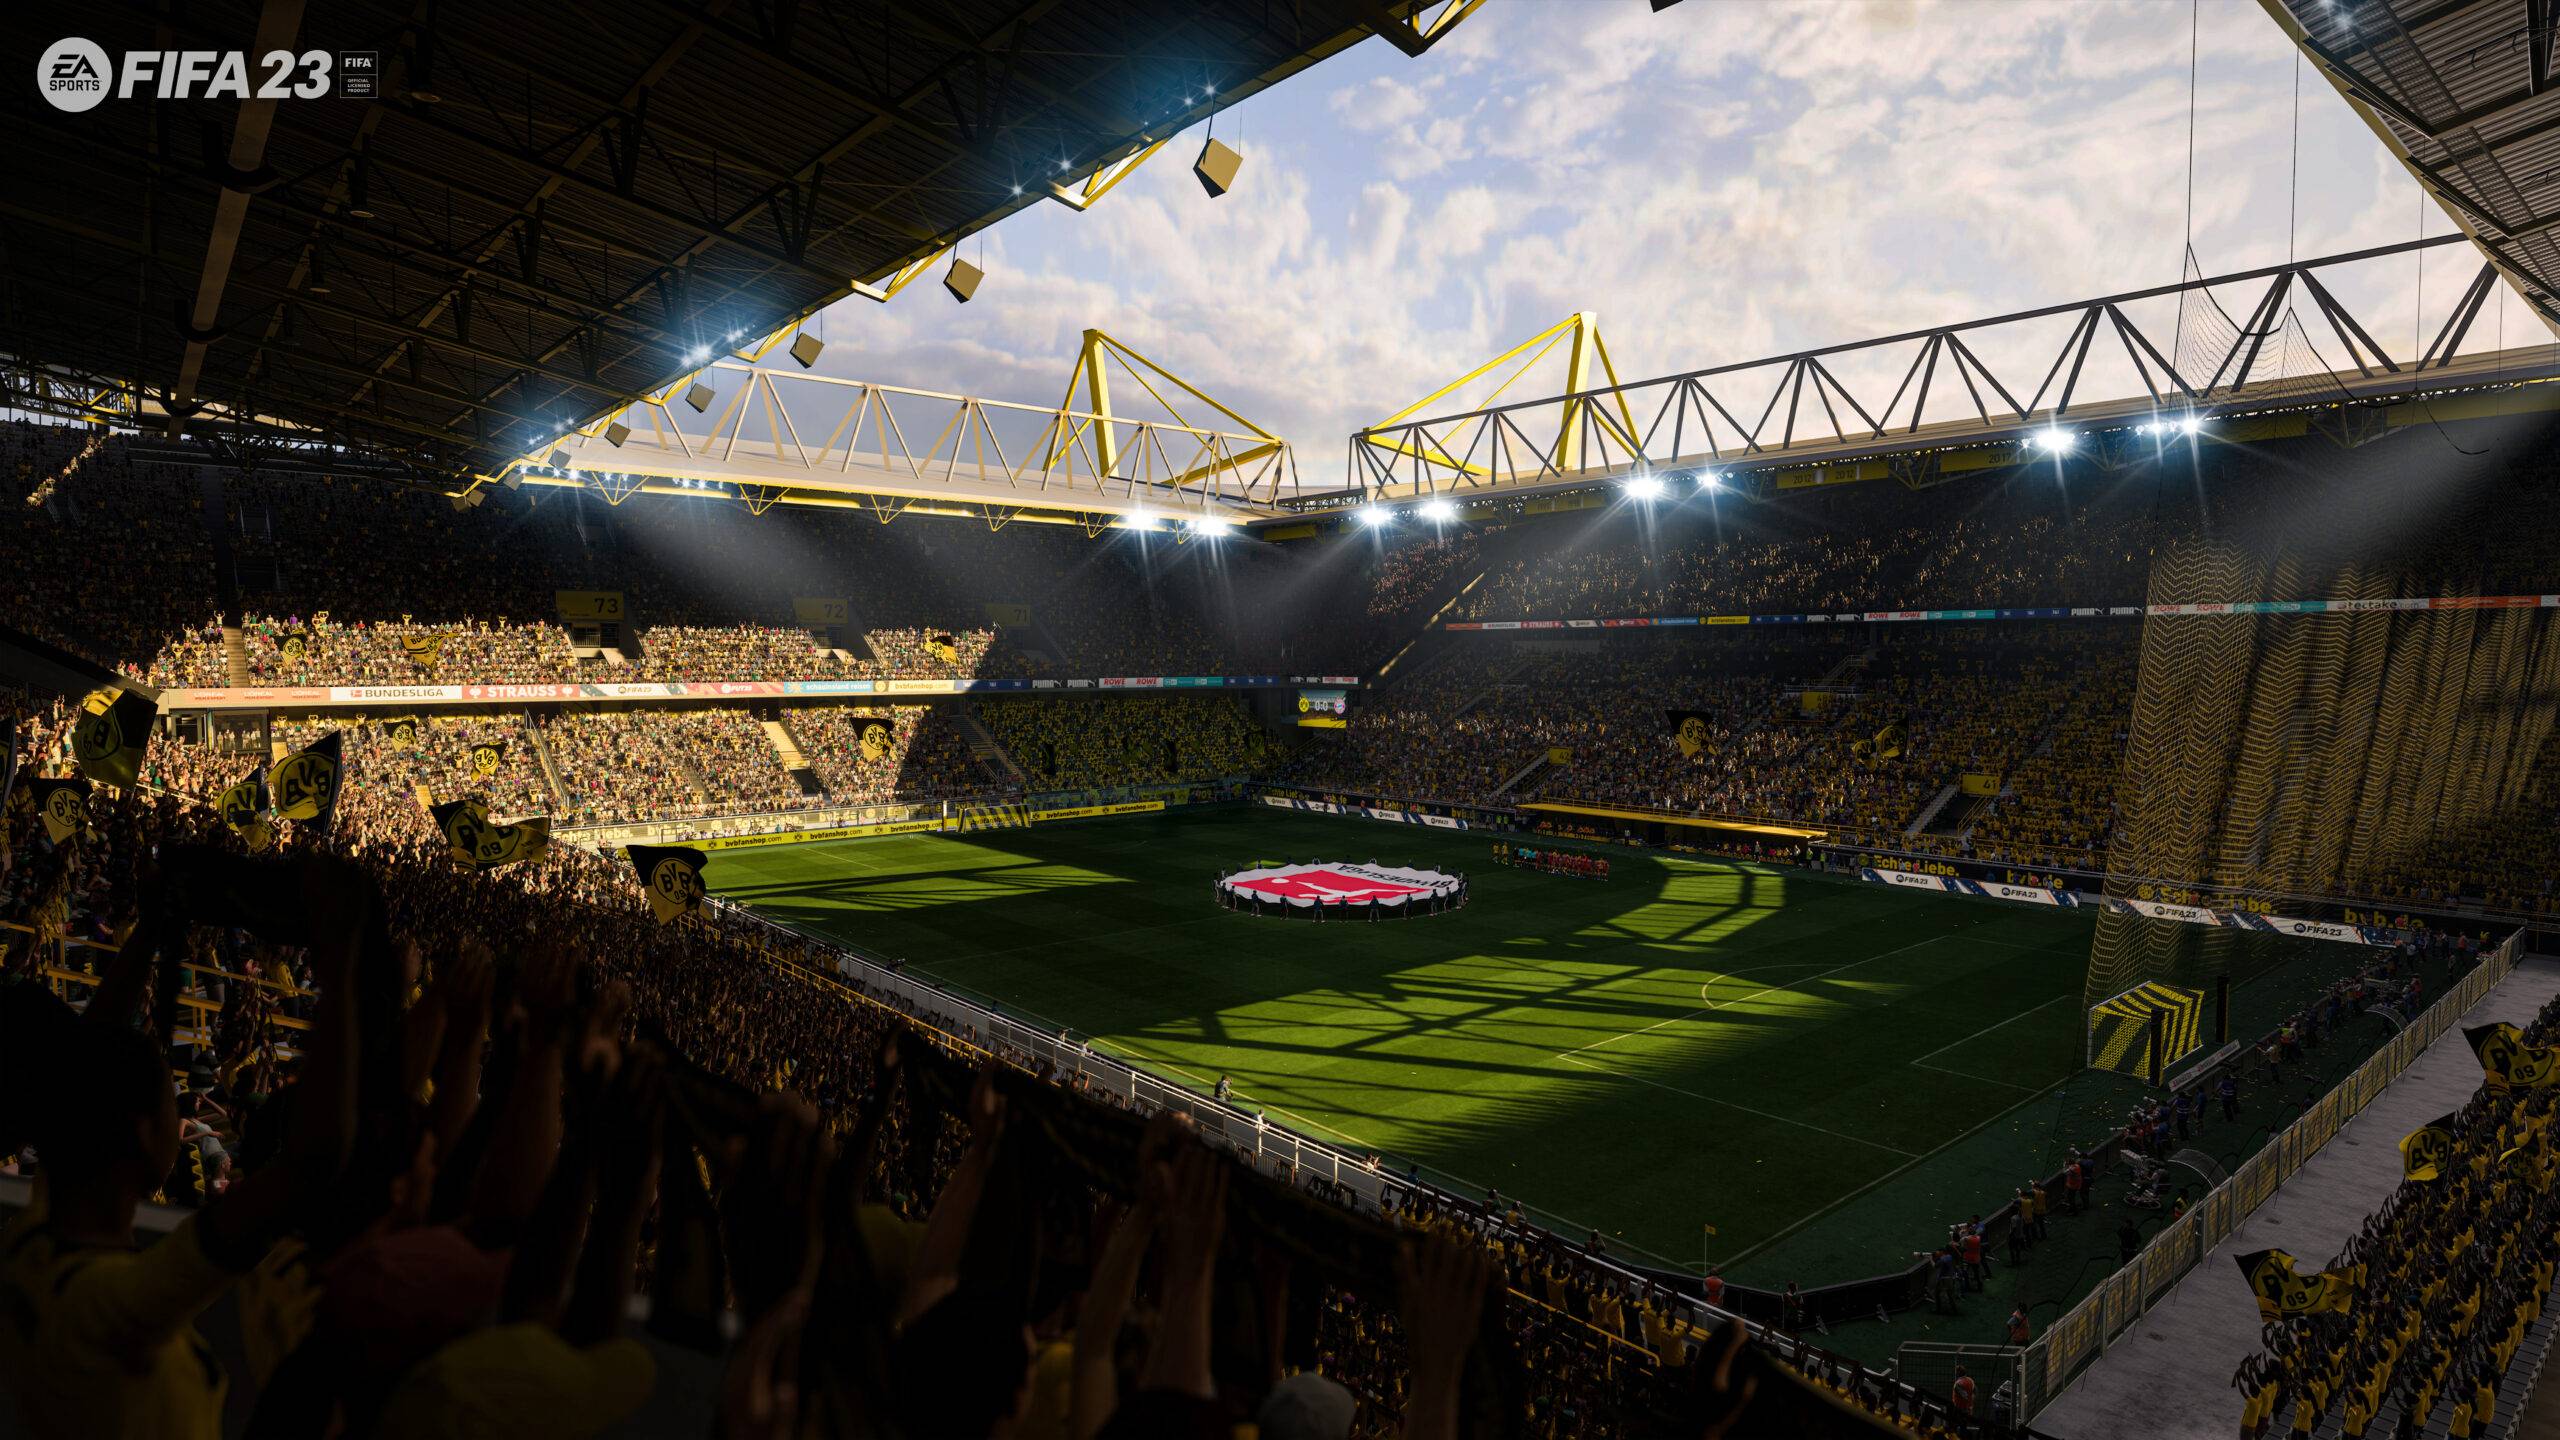 Dortmund stadium in FIFA 23